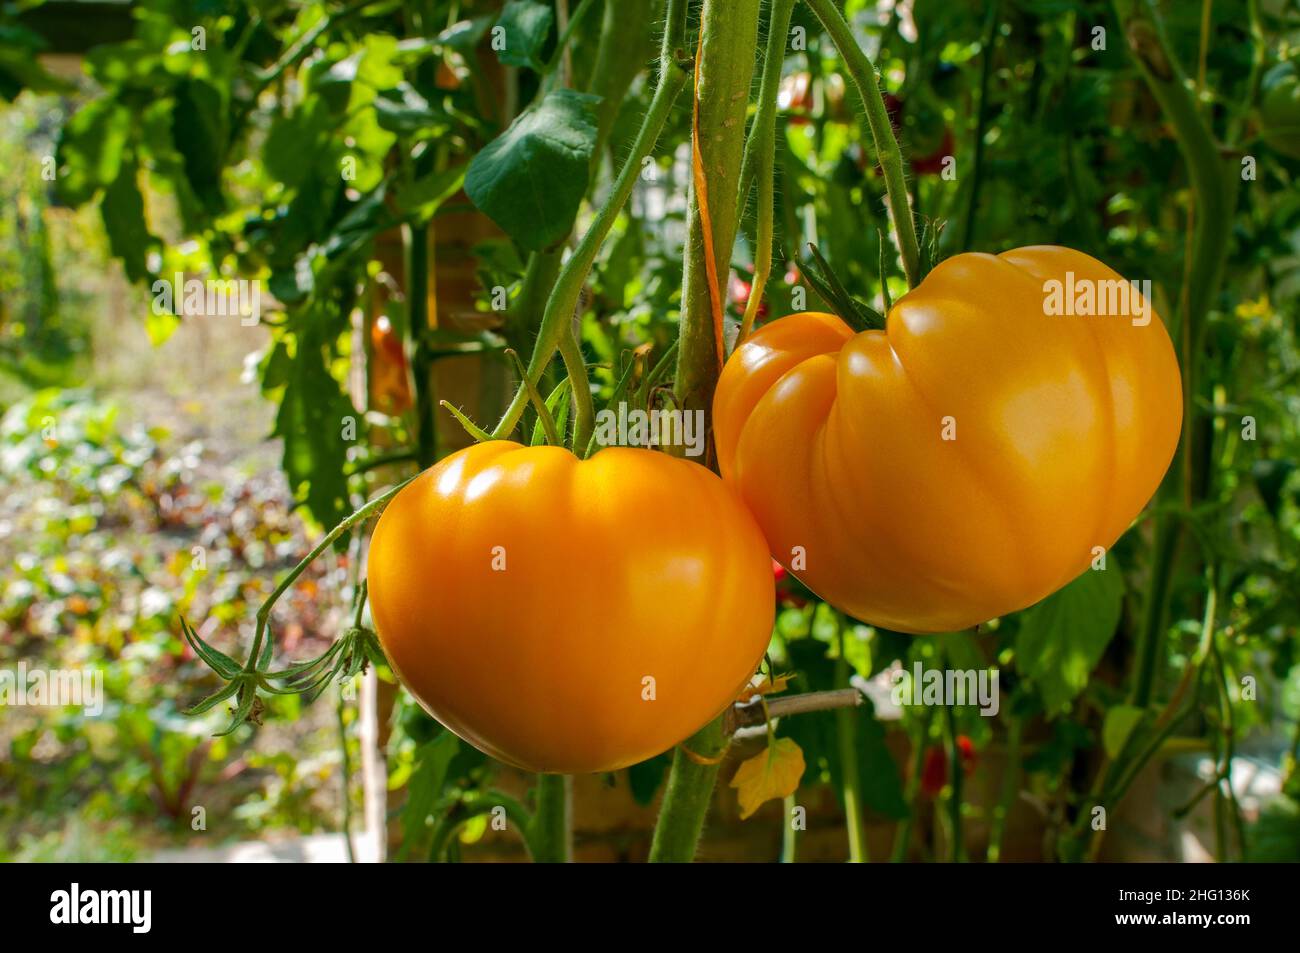 Les tomates jaunes poussent dans des petits pains dans le jardin Banque D'Images